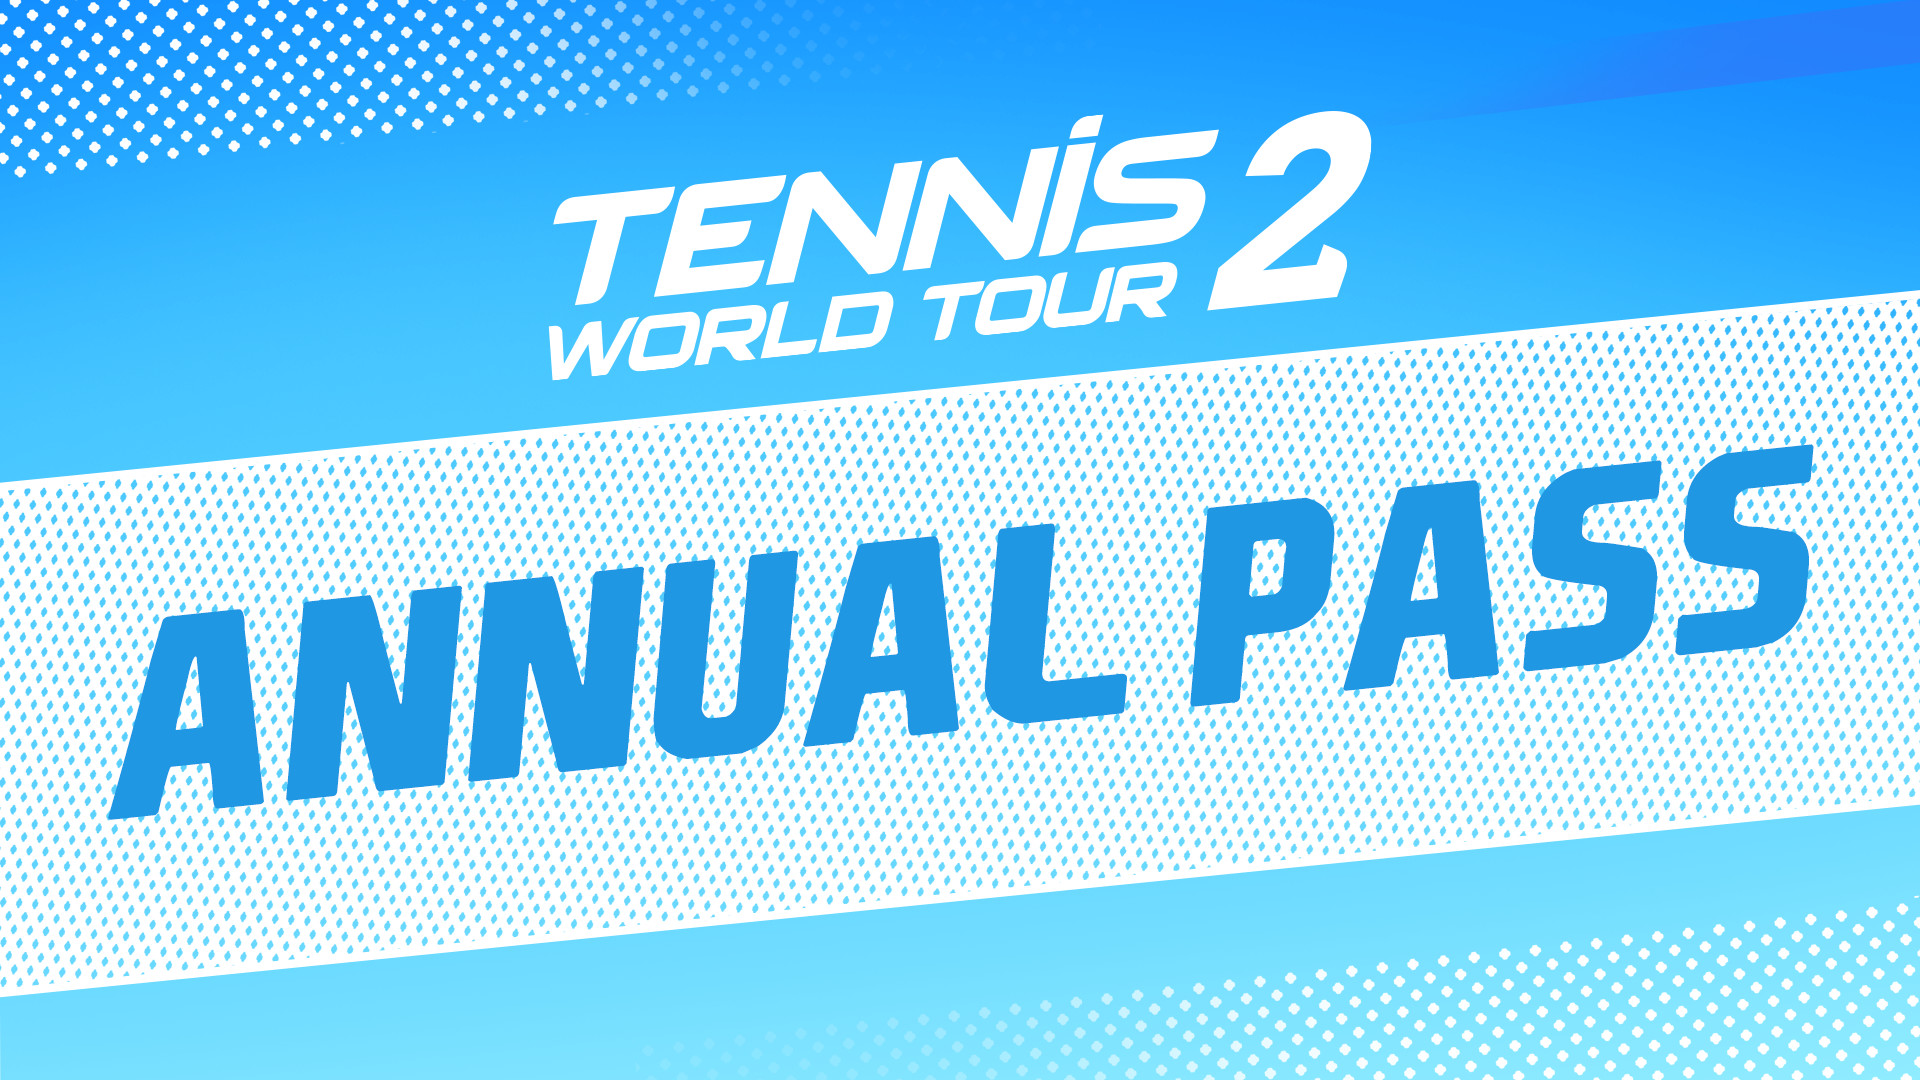 Tennis World Tour 2 - Annual Pass DLC Steam CD Key [USD 7.23]